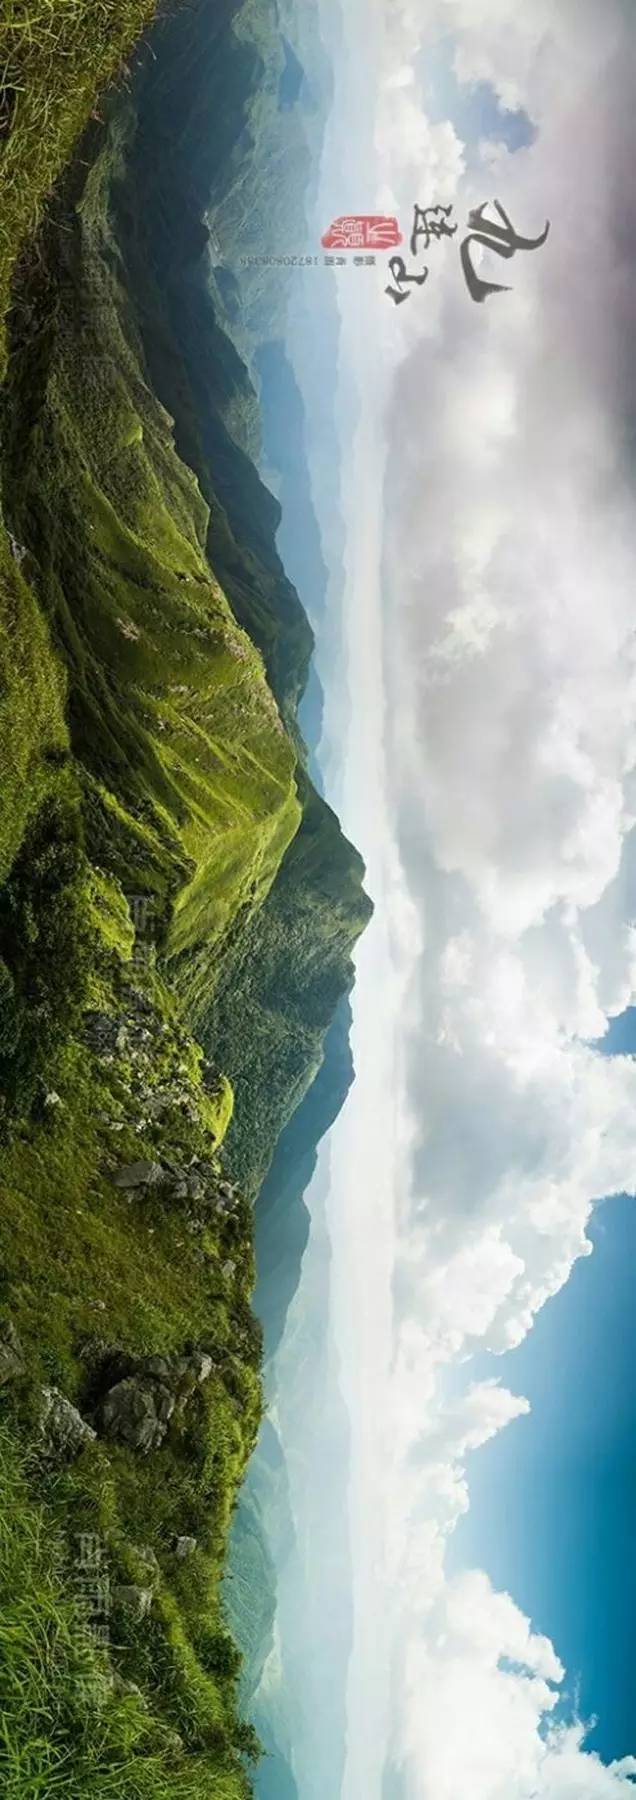 一位龙南摄影师用尽洪荒之力拍摄的九连山,大写的震撼!